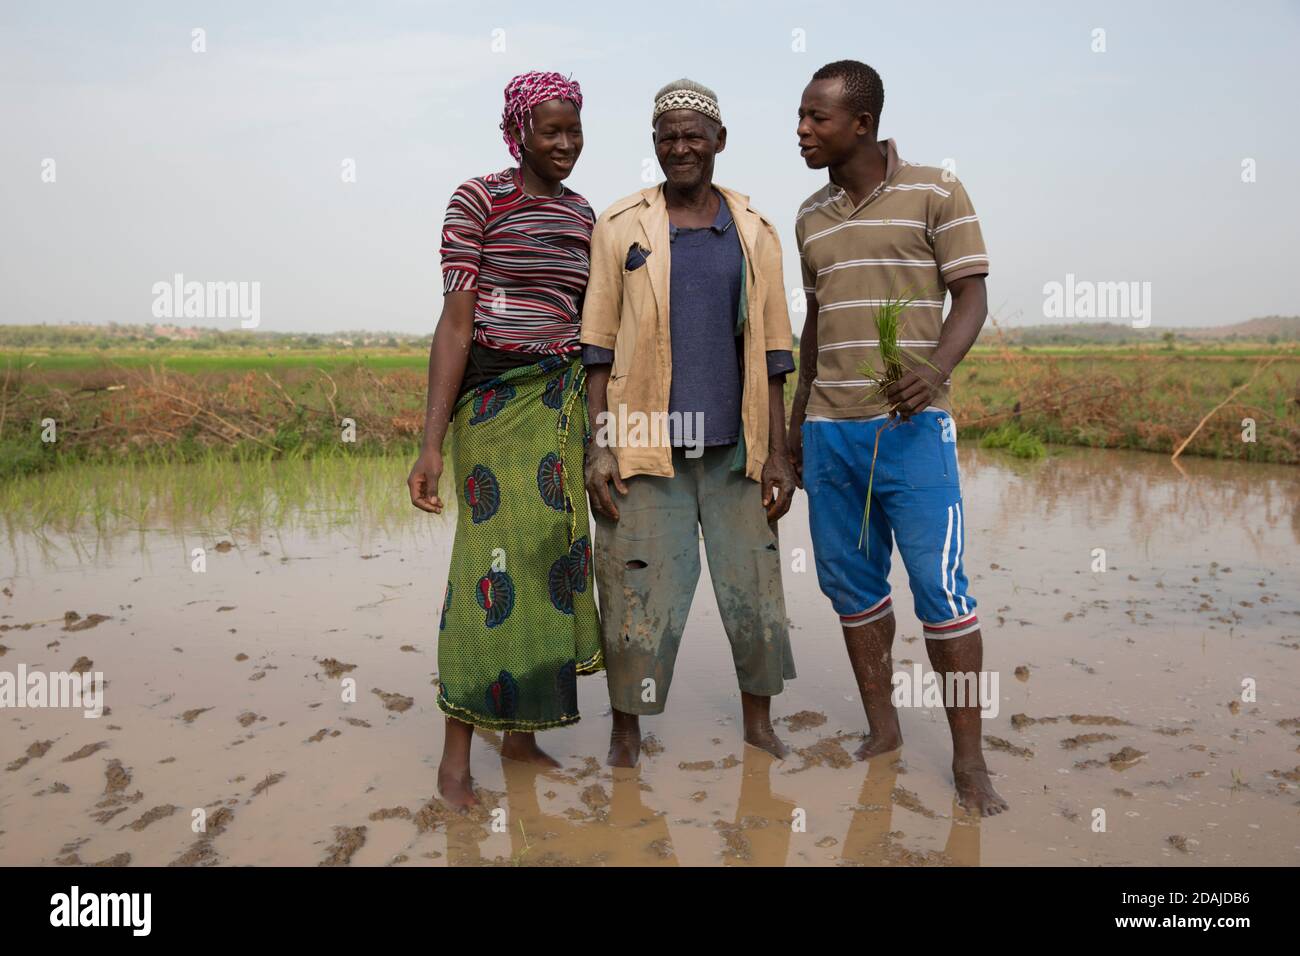 Selingue, Mali, 26th. April 2015; Diola Coulibaly, 79, Pensionierter Armeemann, der auf seinem Grundstück von 0,04 Hektar arbeitet. Das Land war ein Gartengrundstück, aber er hat es geändert, um Reis anzubauen. Er hat auch einen Hektar Reis in einem anderen Teil von Selingue. Sein Sohn, Moussa Coulibaly, 19, und seine Frau Mamou Coulibaly, 18, arbeiten mit ihm zusammen. Diola hat eine Armeepension und seine Söhne erledigen die meiste Arbeit. Die Familie teilt alle Produkte der Landwirtschaft zwischen ihnen. Moussa arbeitet Vollzeit auf dem Land. Diola hat zwei Frauen und 8 Kinder. Stockfoto